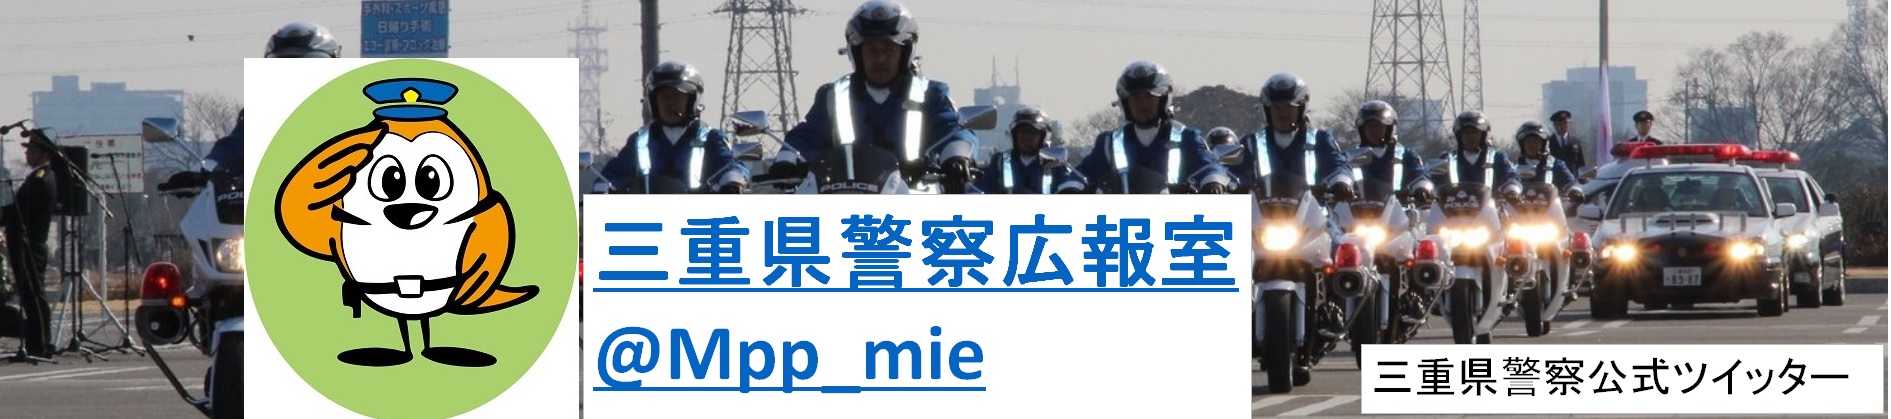 三重県警察公式ツイッター